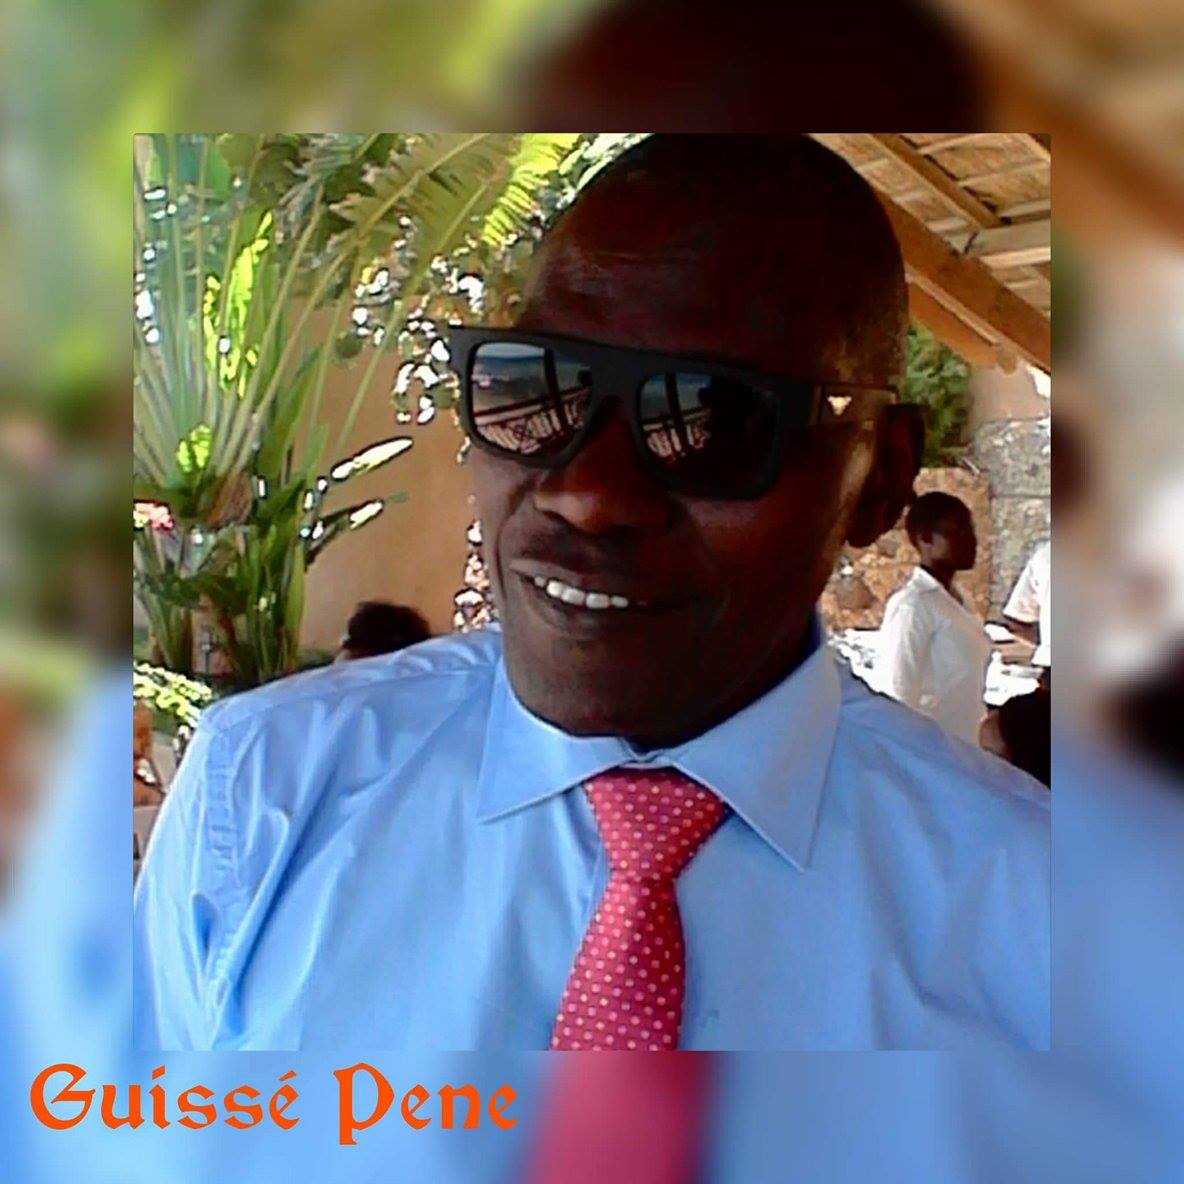 Le message de Guissé Pène au coach des Lions du foot, Aliou Cissé